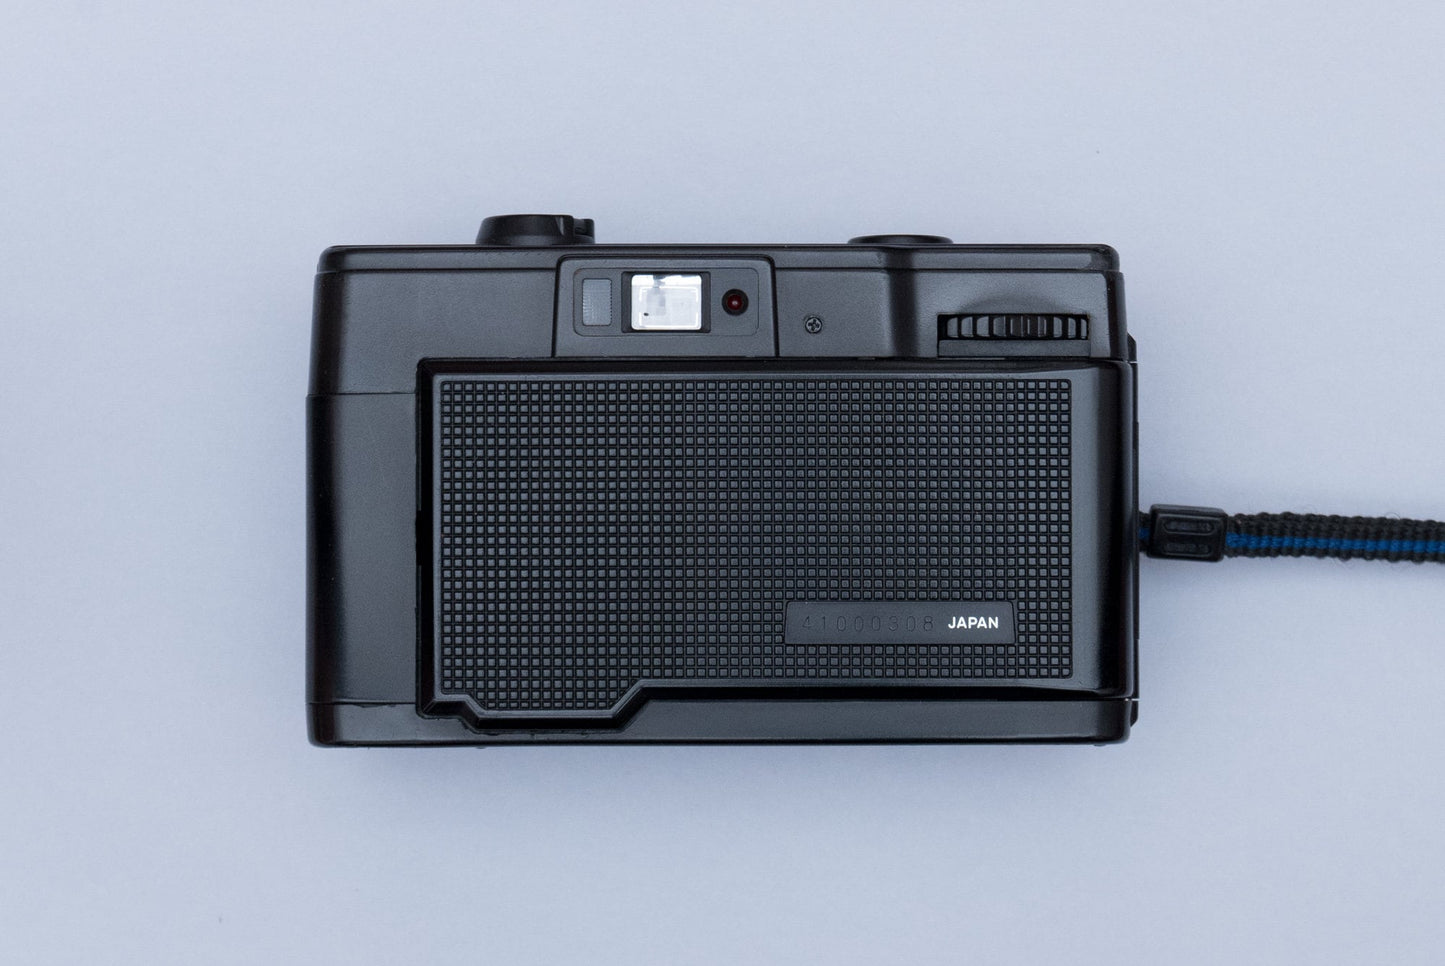 Minolta Hi-Matic GF 35mm Compact Film Camera